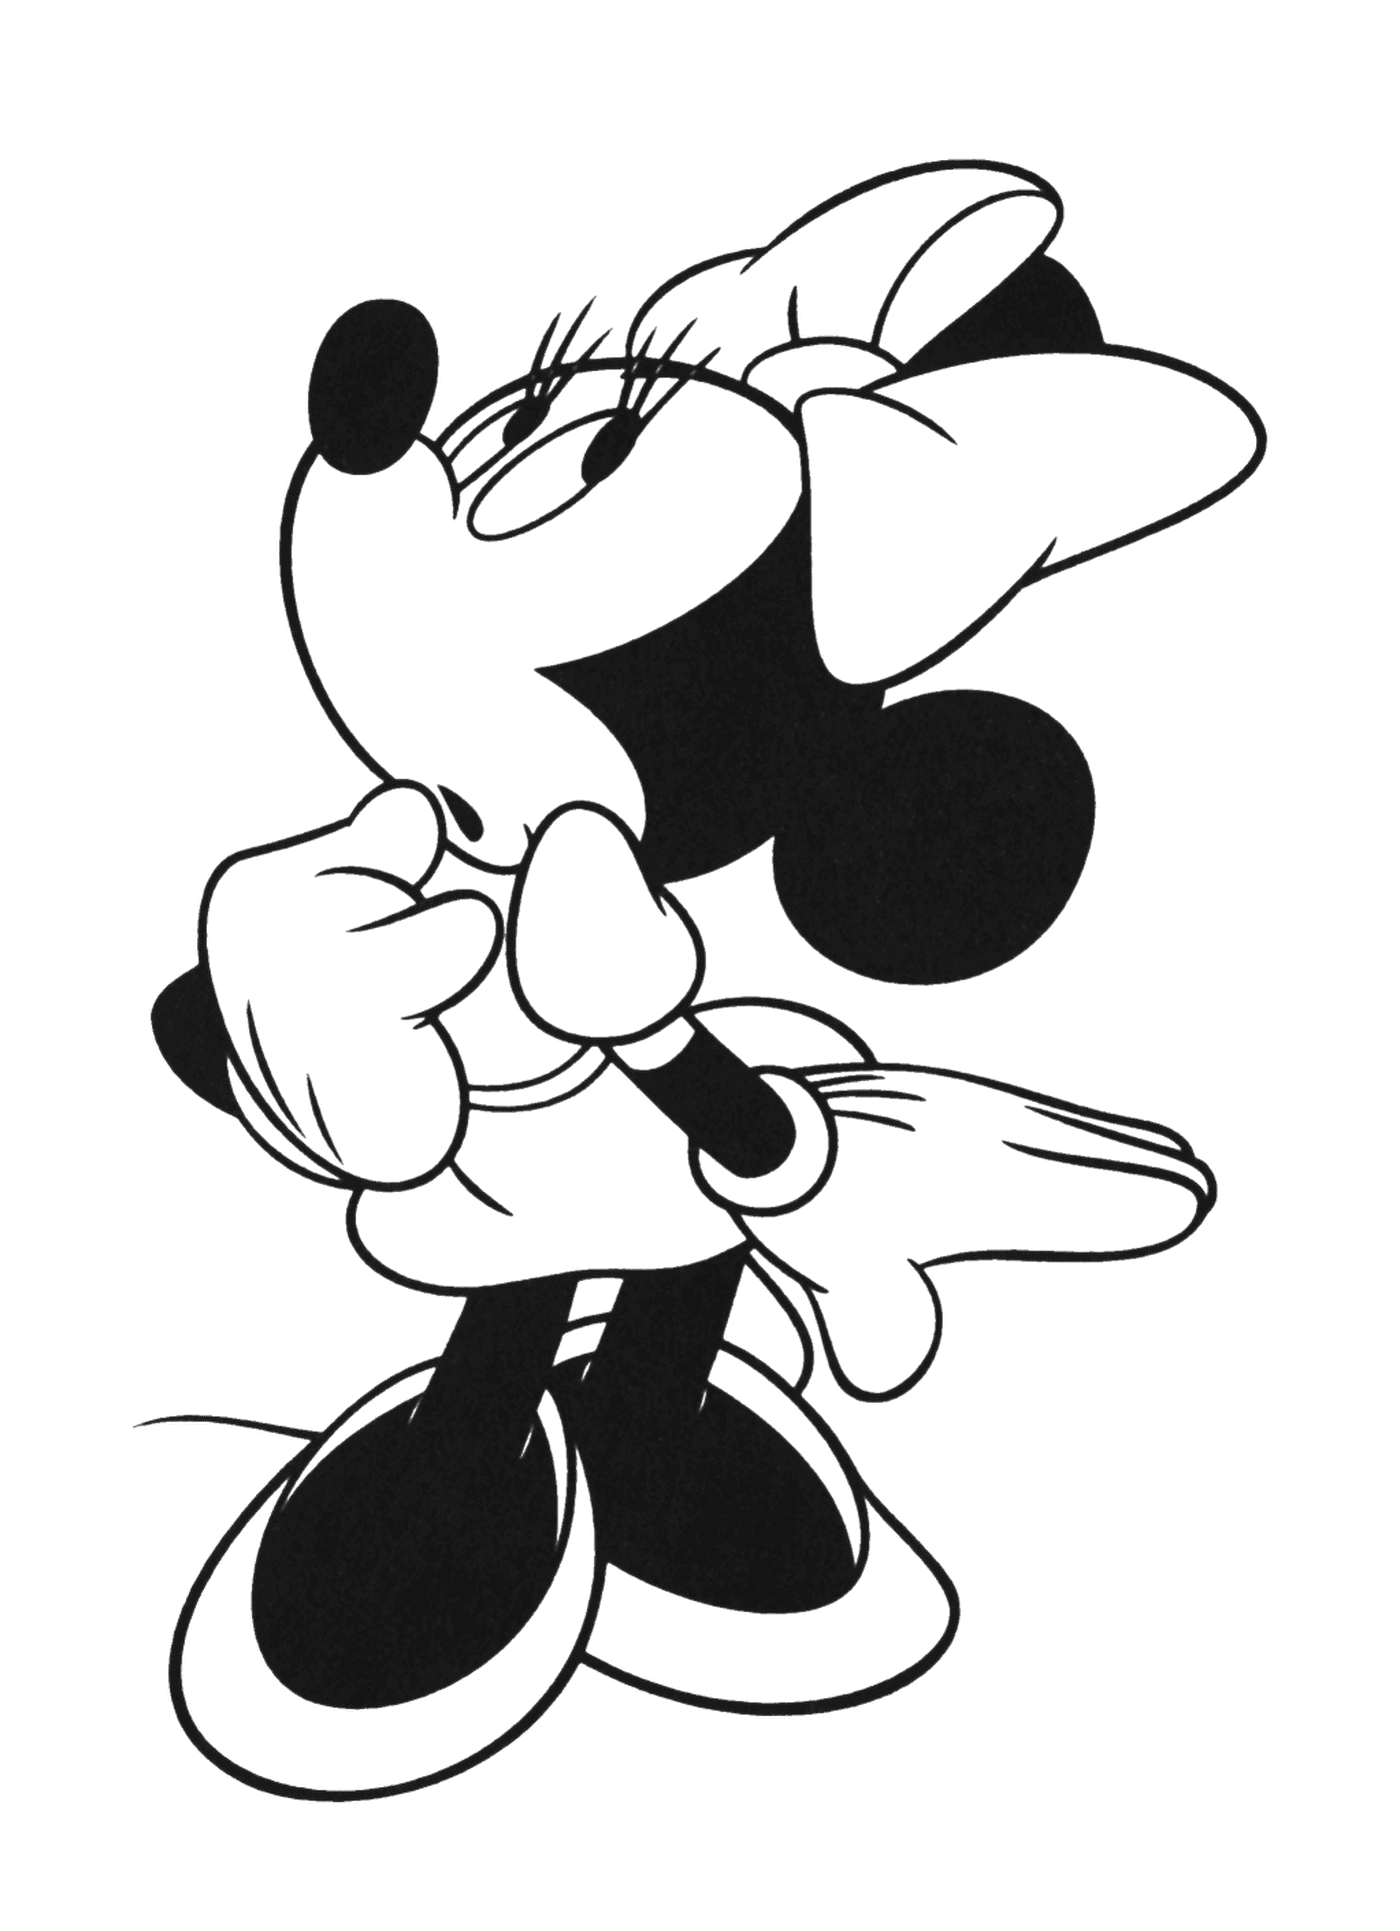  Mickey Mouse, el compañero de Minnie desde 1928 